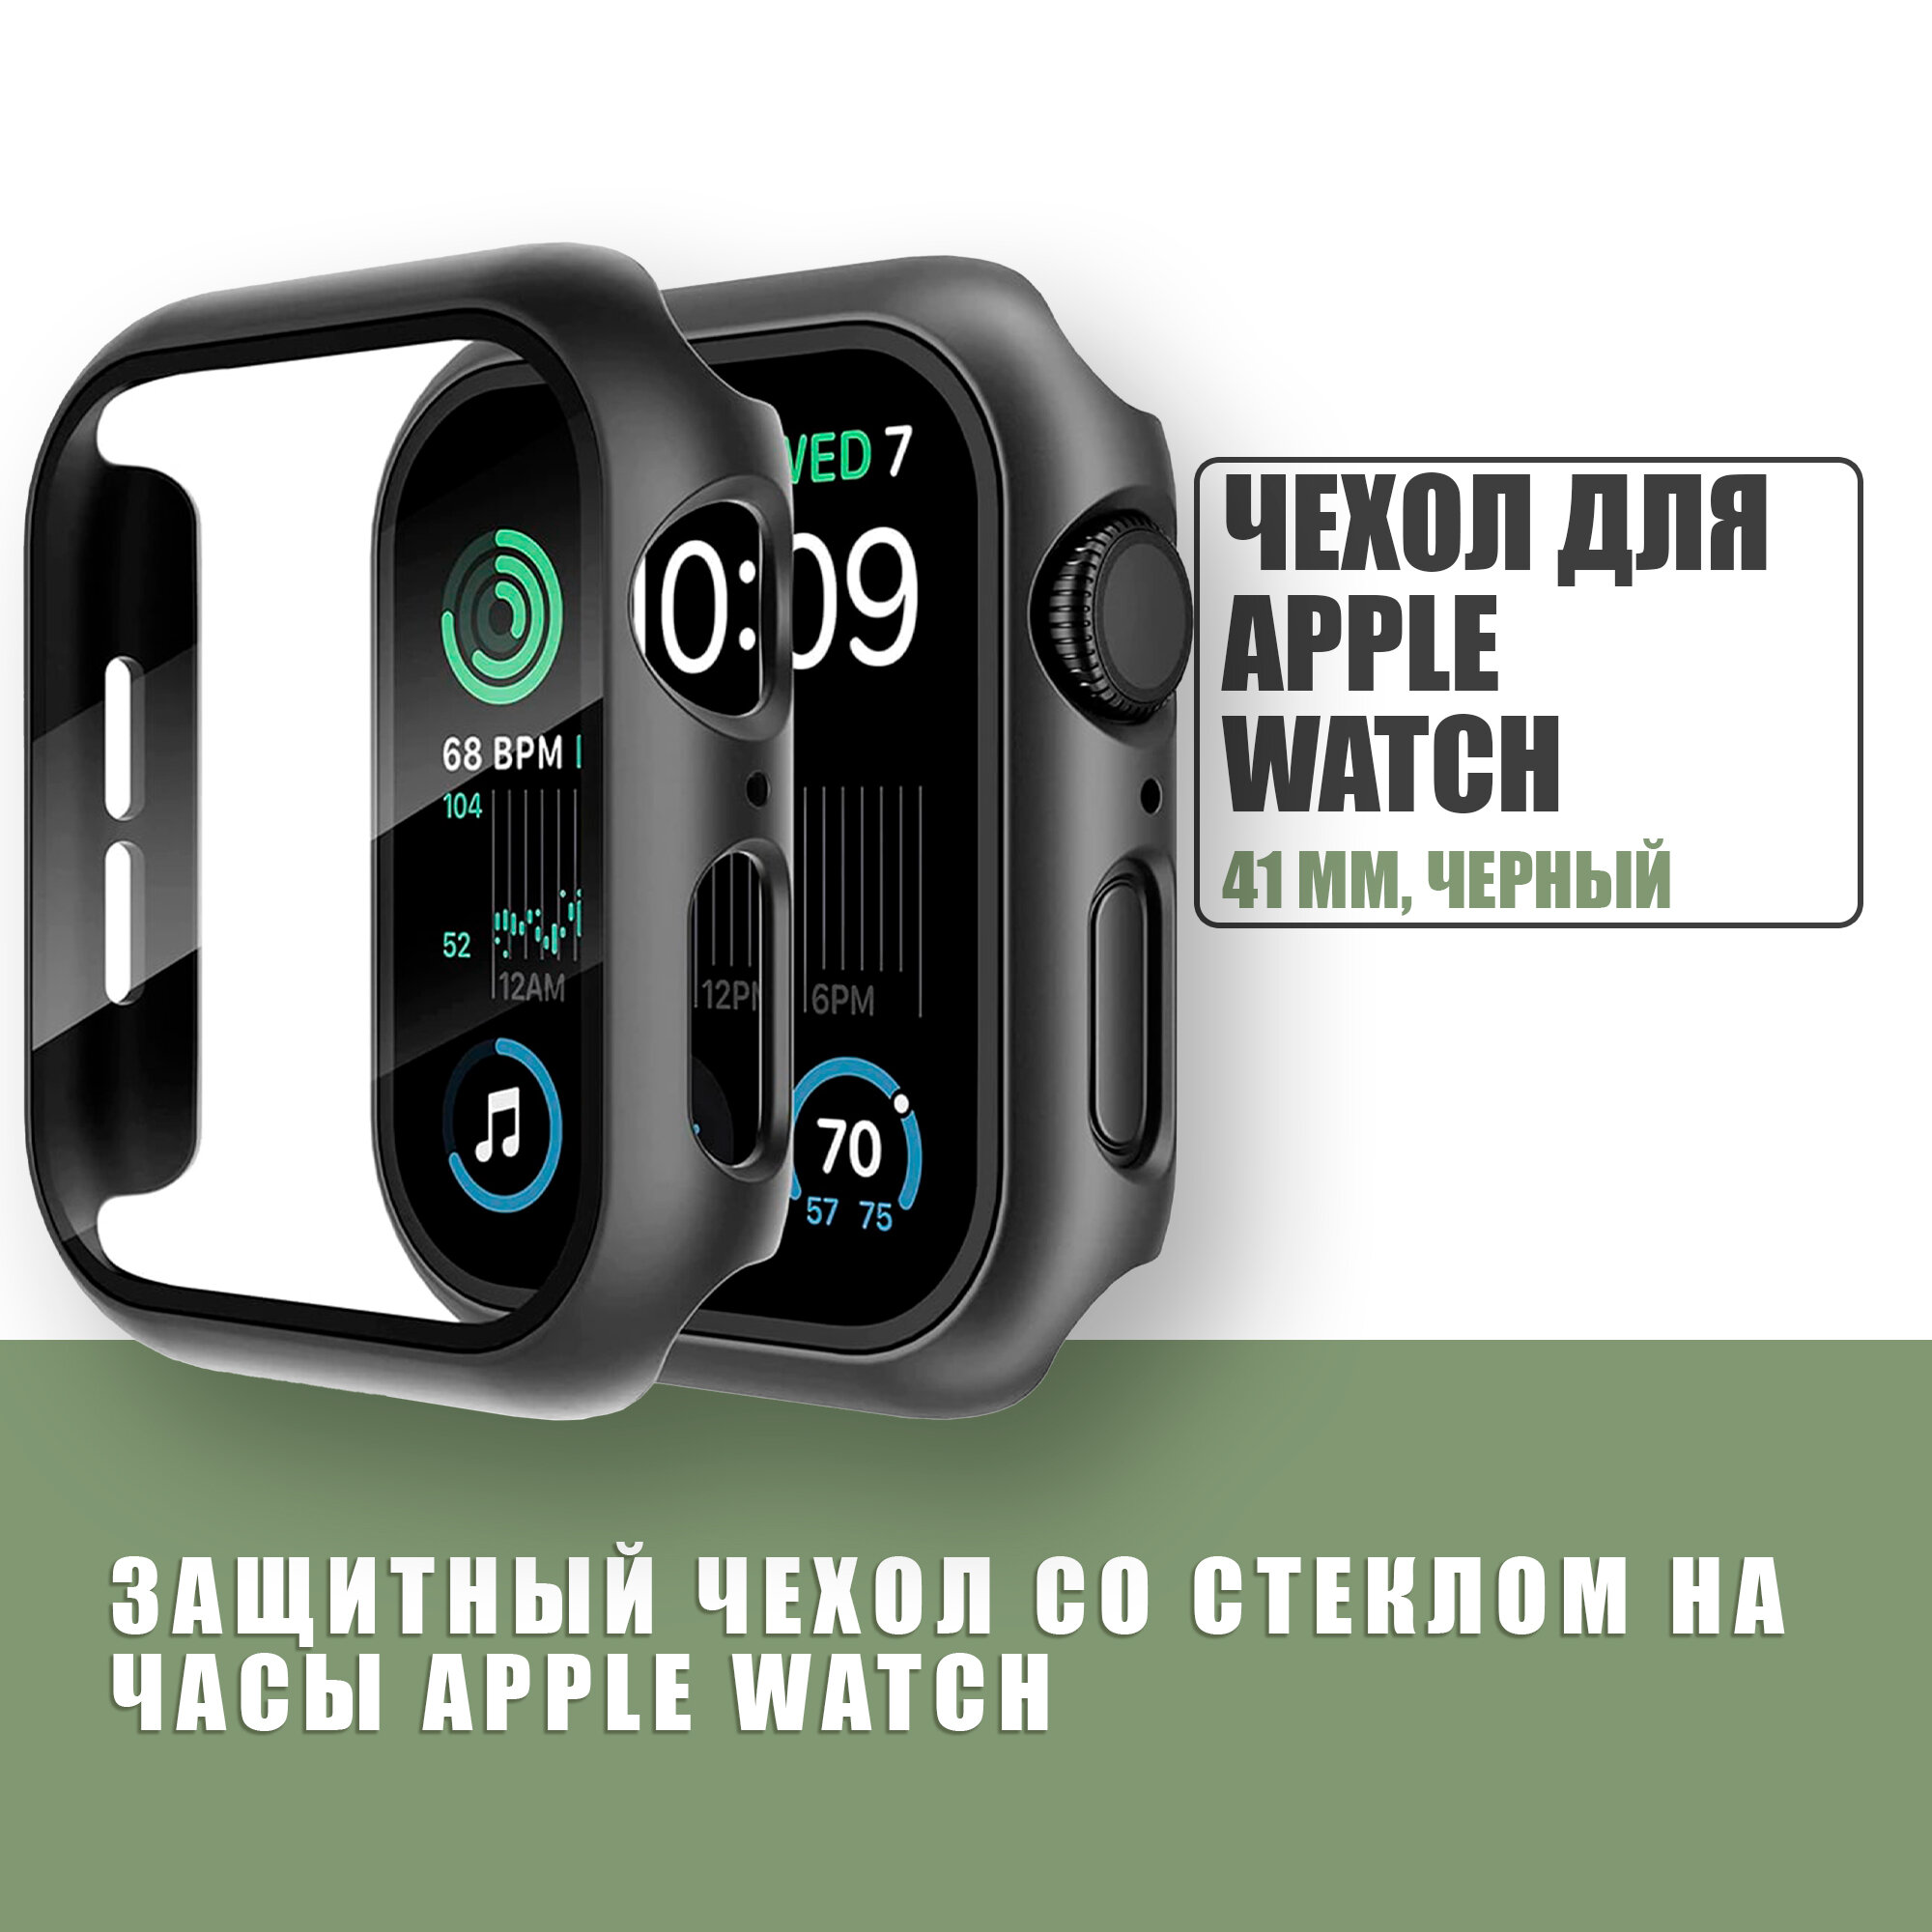 Защитный чехол стекло на часы Apple Watch 41 mm / Стекло на Апл Вотч 7, 8, Черный